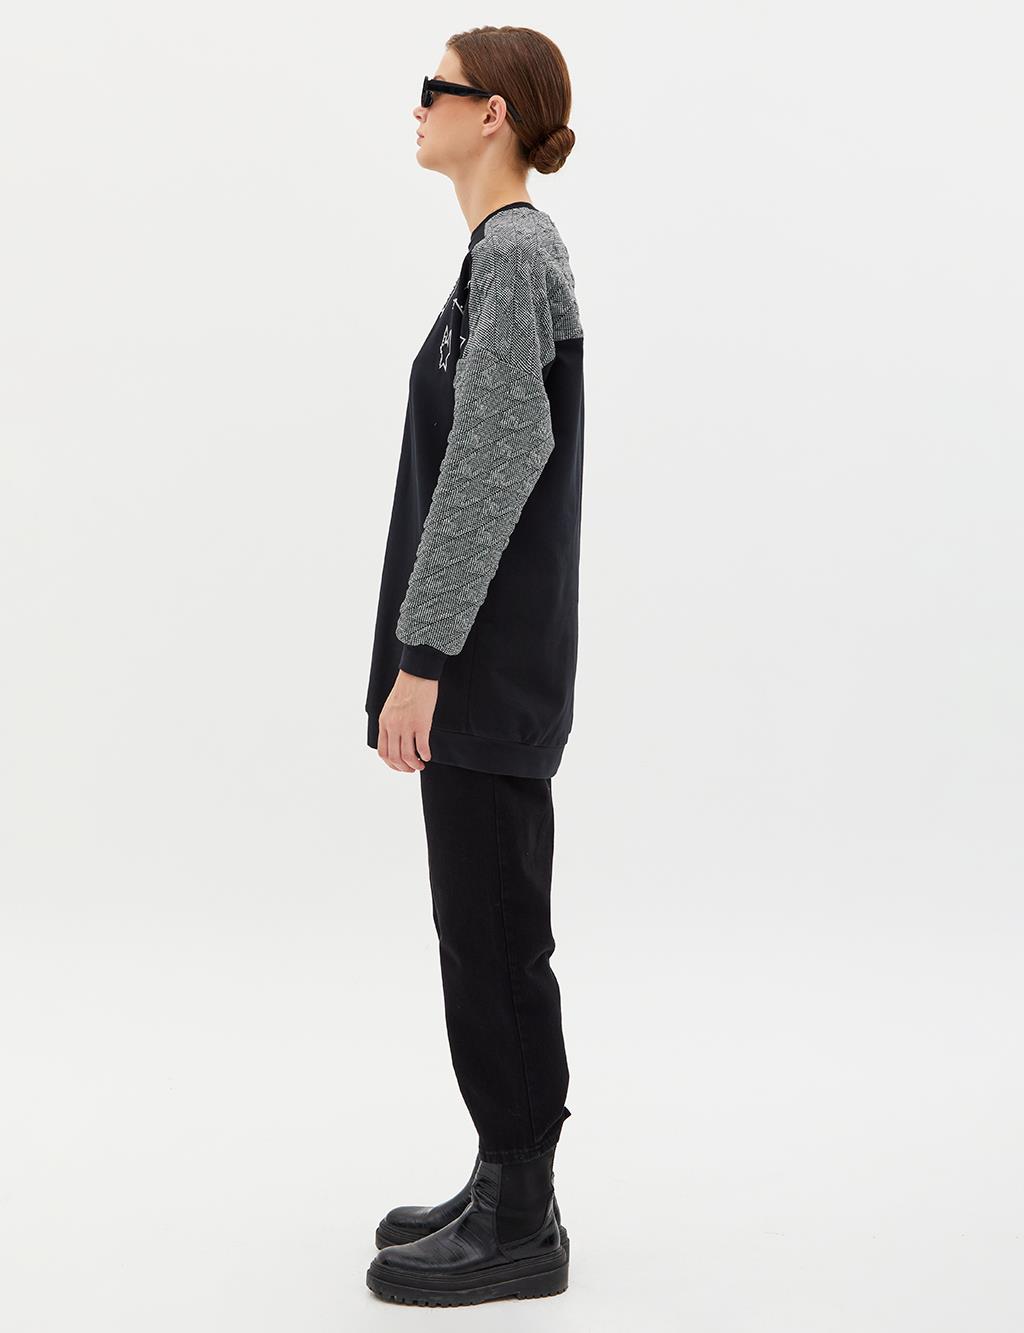 Textured Garnished Stone Detailed Sweatshirt Black